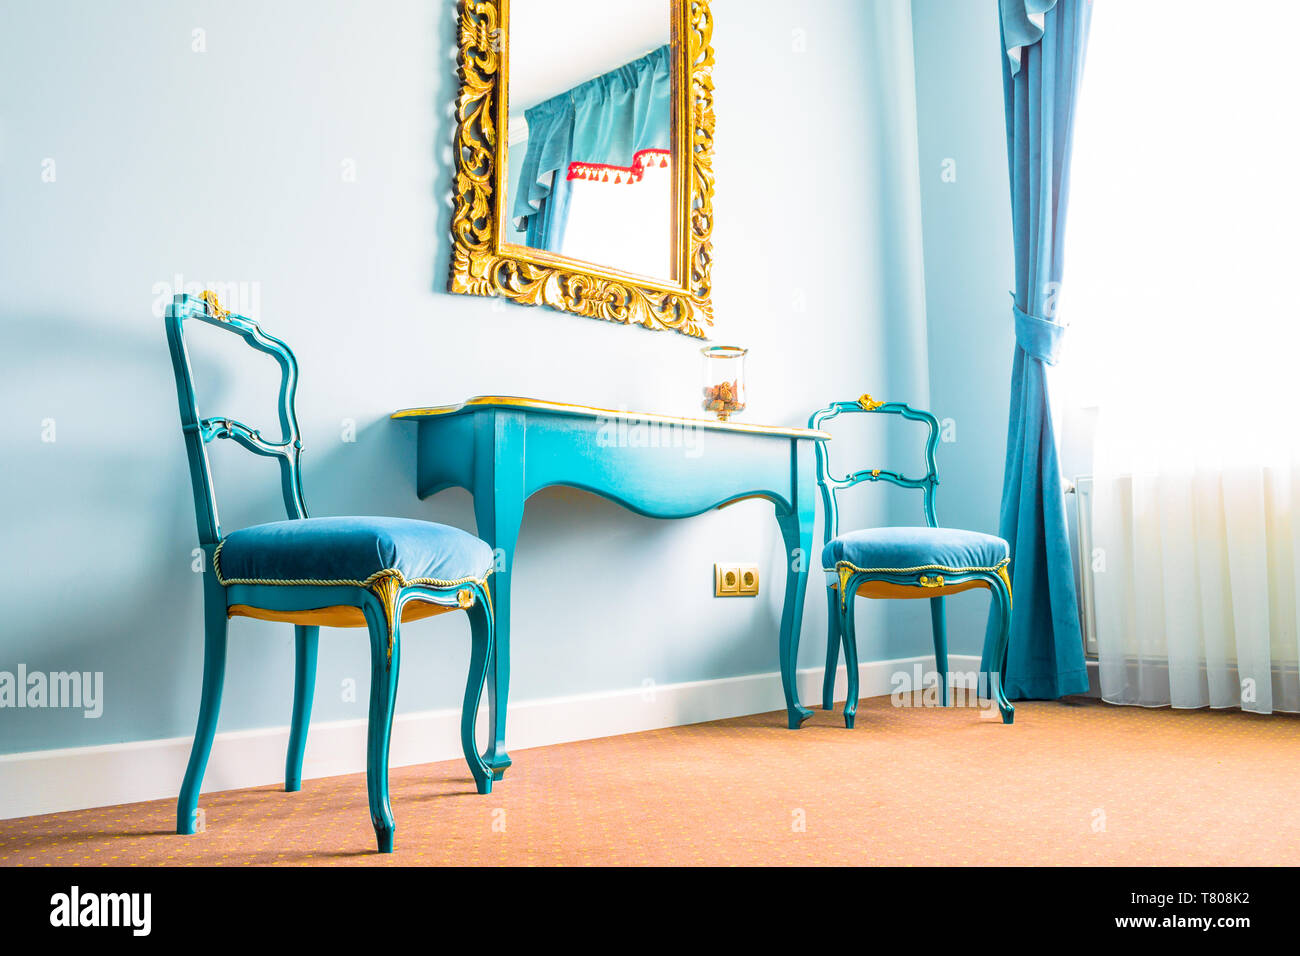 Vintage azul dos sillas y una mesa de madera junto a una pared con un  espejo, decorado con flores amarillas se arremolina en su marco. Cortinas  de color azul en el lado